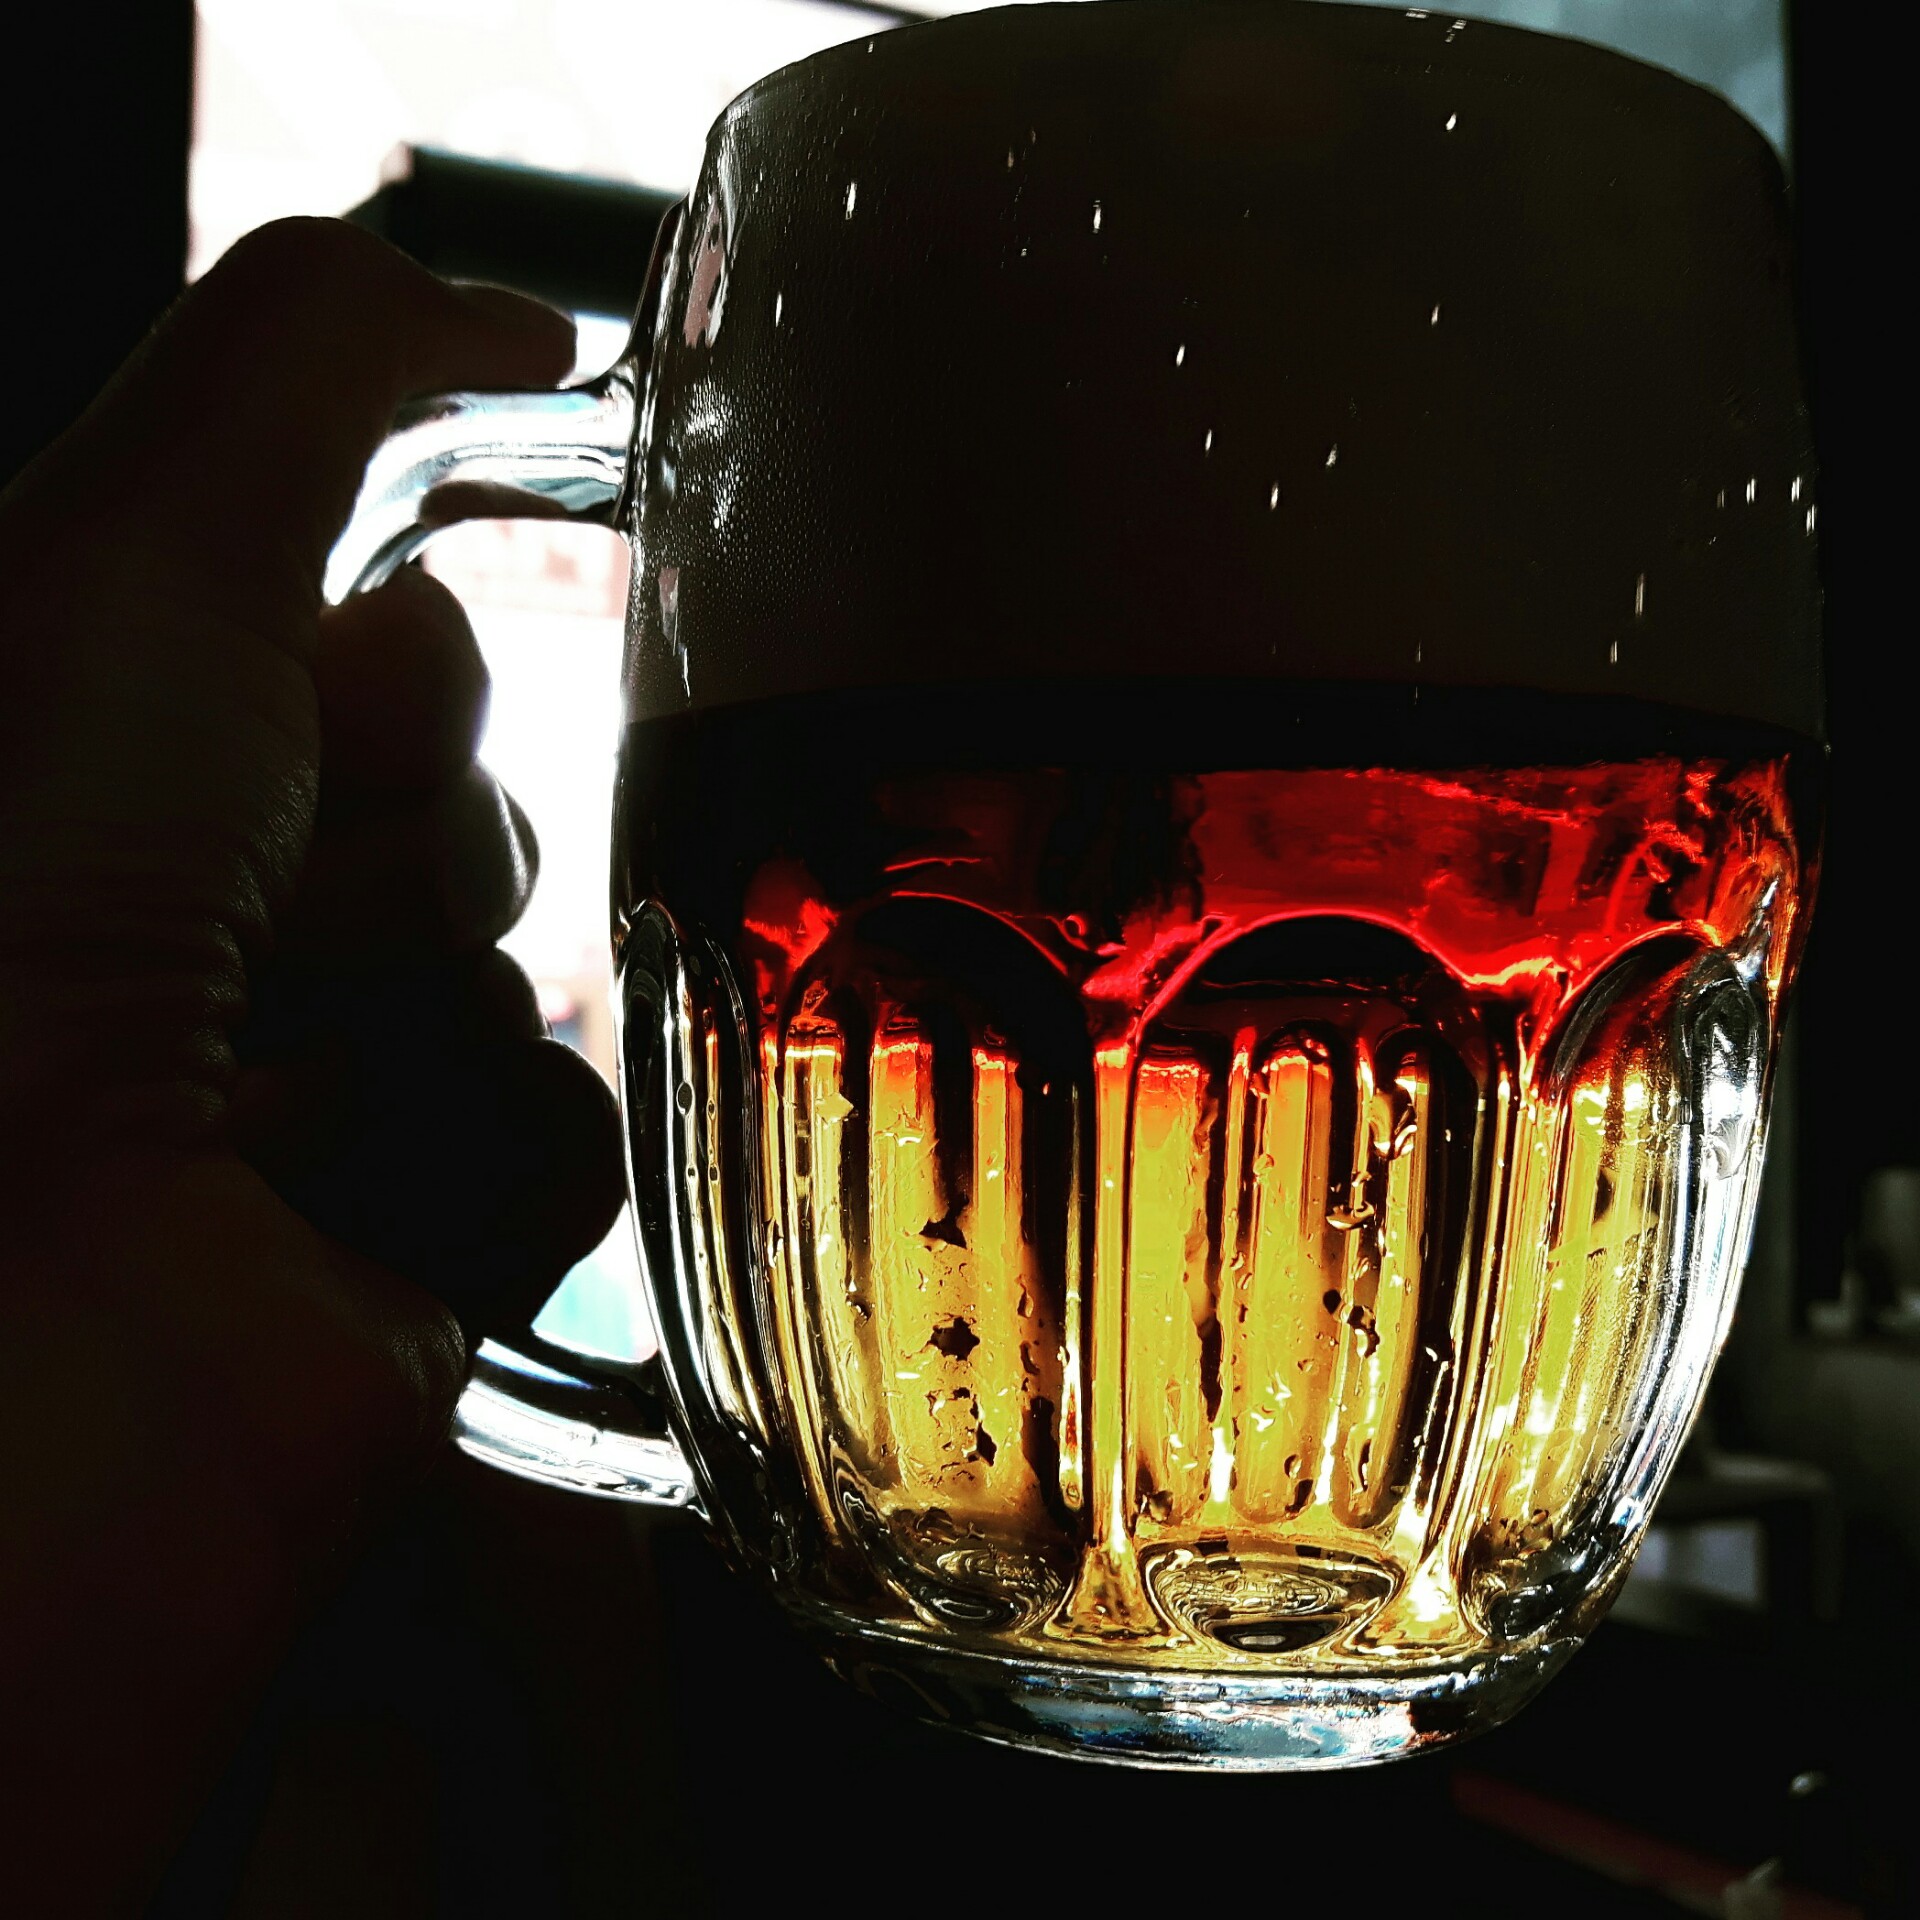 Piwo rżnięte, czyli řezané pivo pół na pół ciemne z jasnym